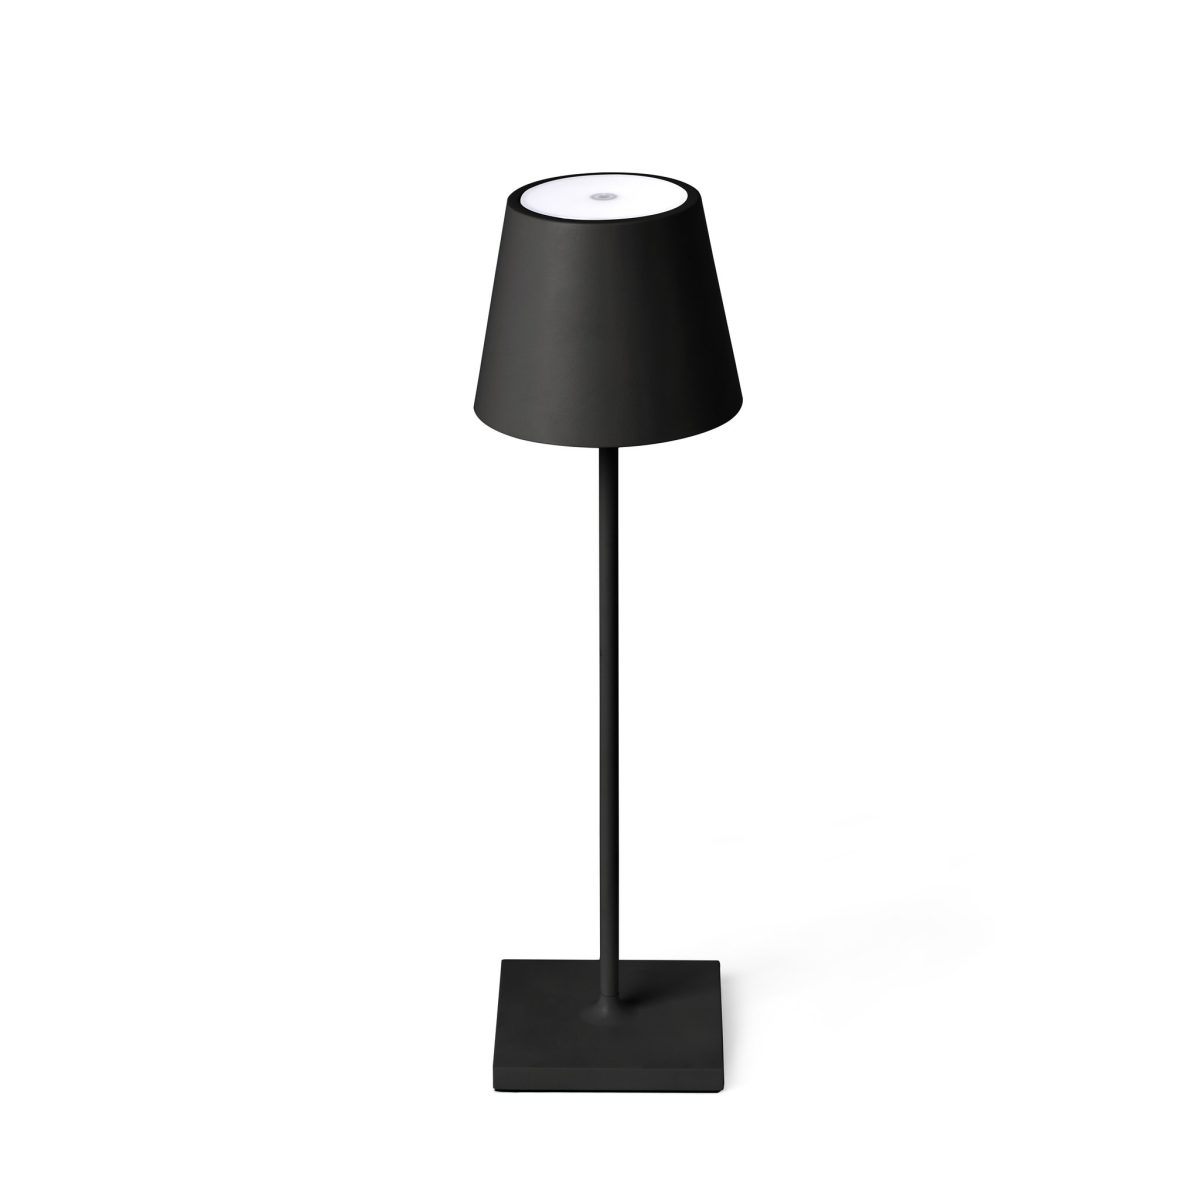 TOC LED Sobremesa de Faro. Medidas: L 110 x A 380 x F 110 mm. Color: Negro